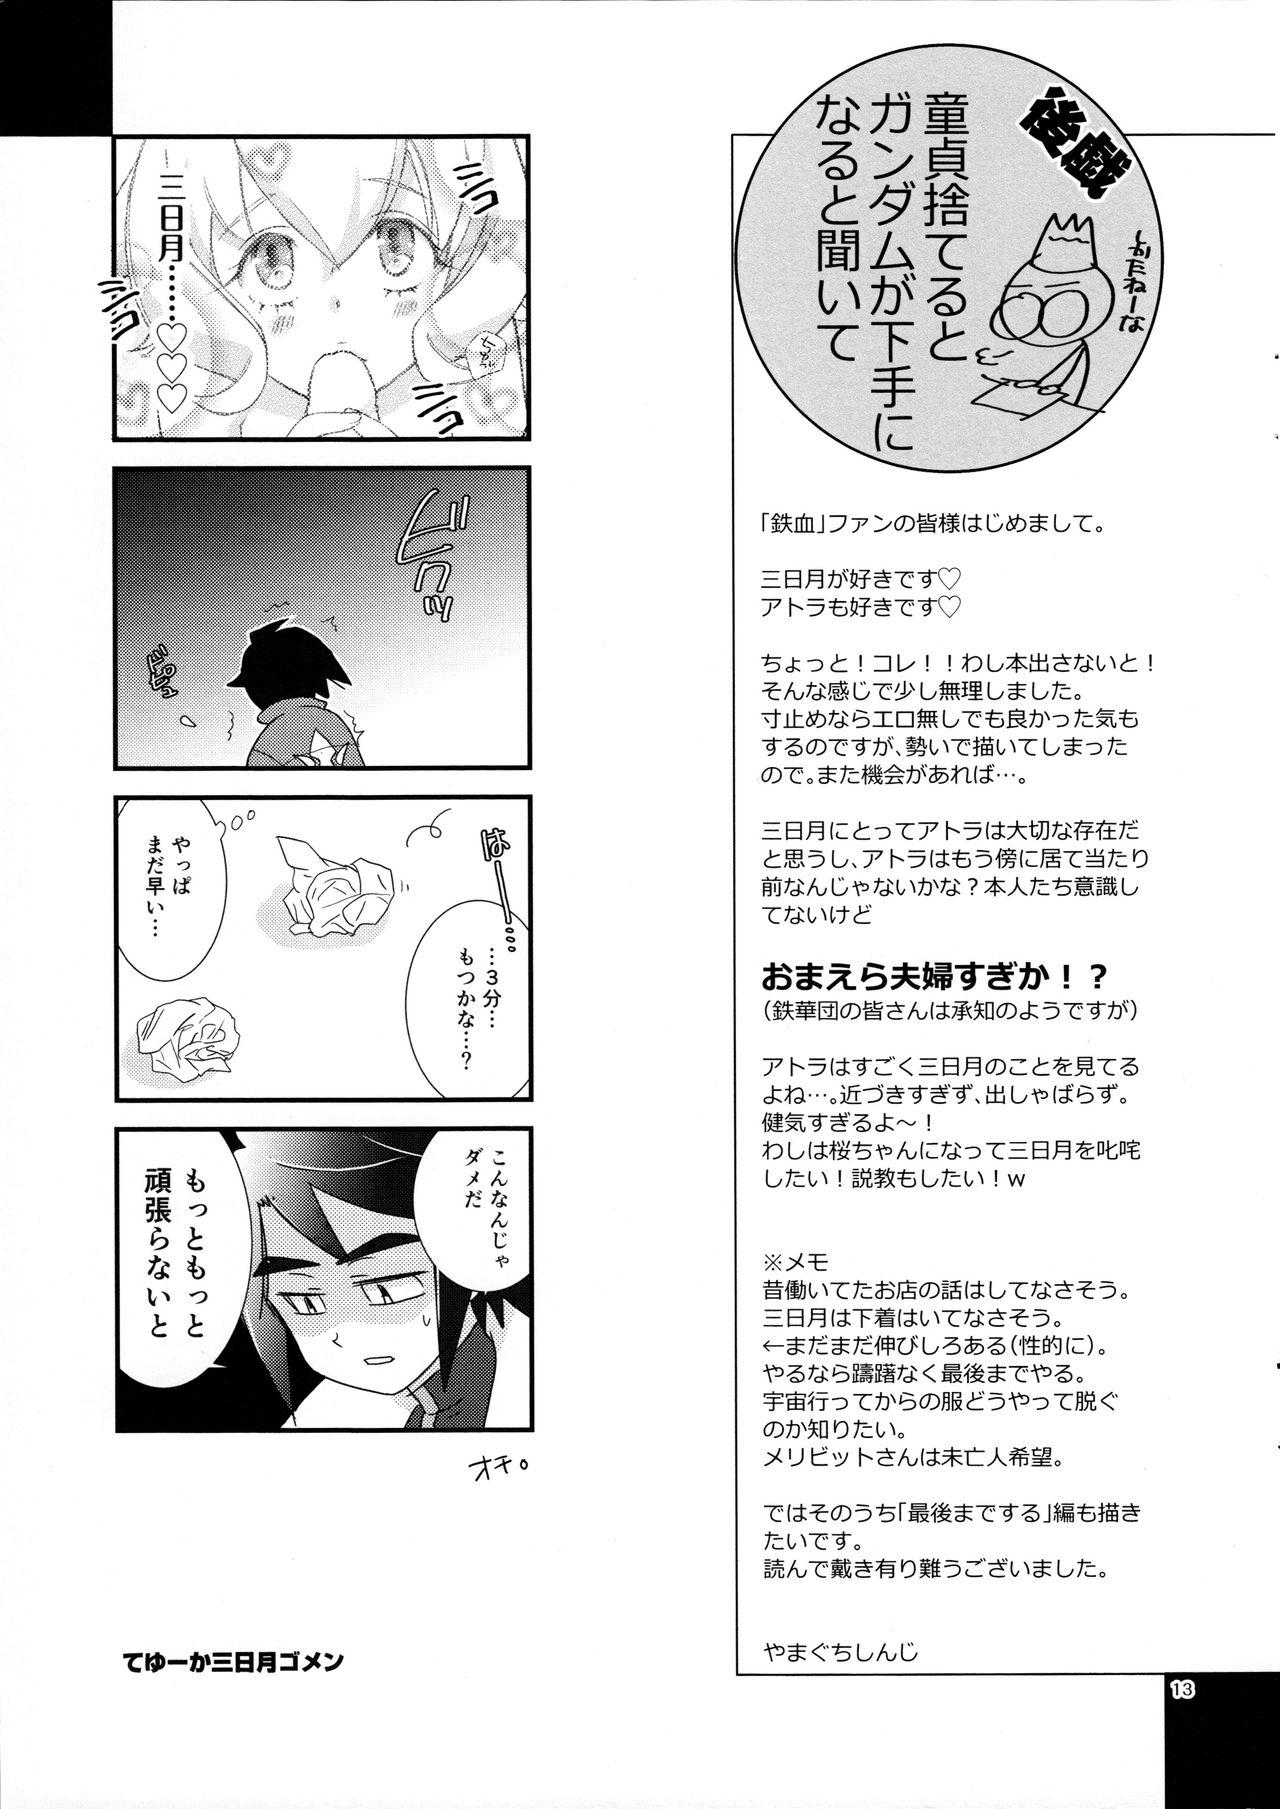 Oralsex Mikazuki wa Itsumo Saigomade Shinai - Mobile suit gundam tekketsu no orphans Sluts - Page 12